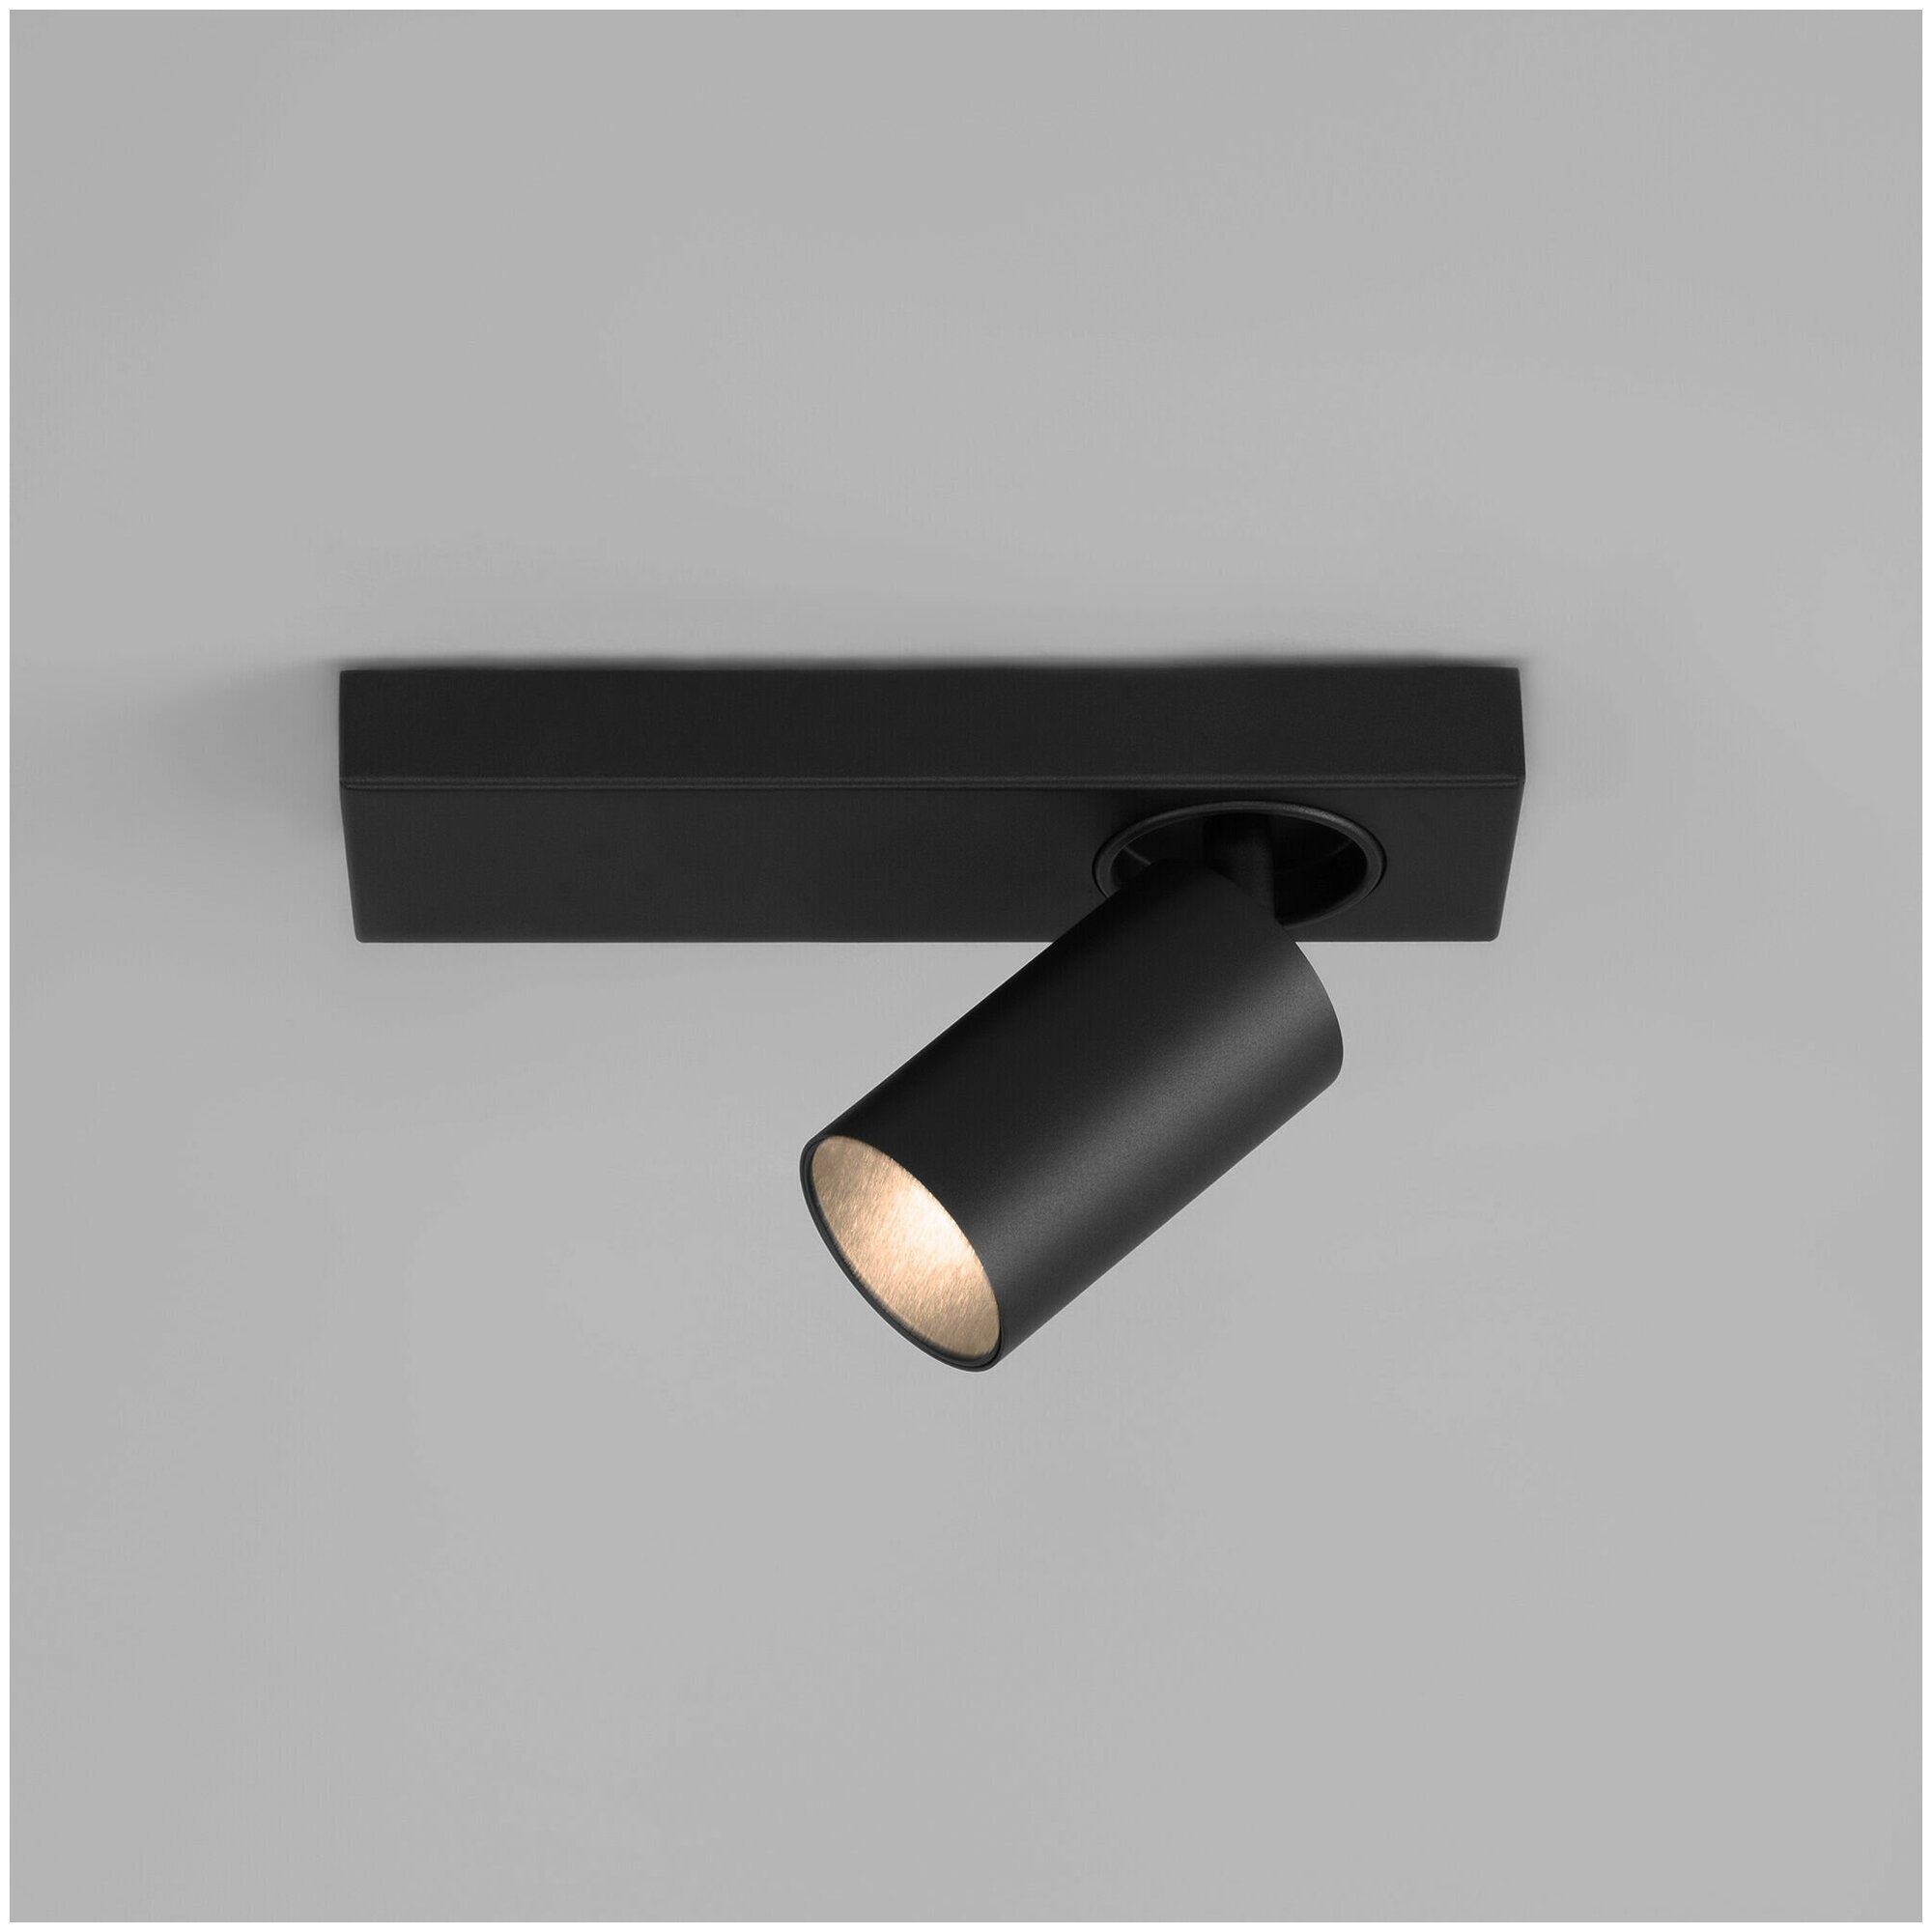 Спот / Накладной светодиодный светильник с поворотным плафоном Eurosvet 20139/1 LED, 5 Вт, 4200 К, цвет черный